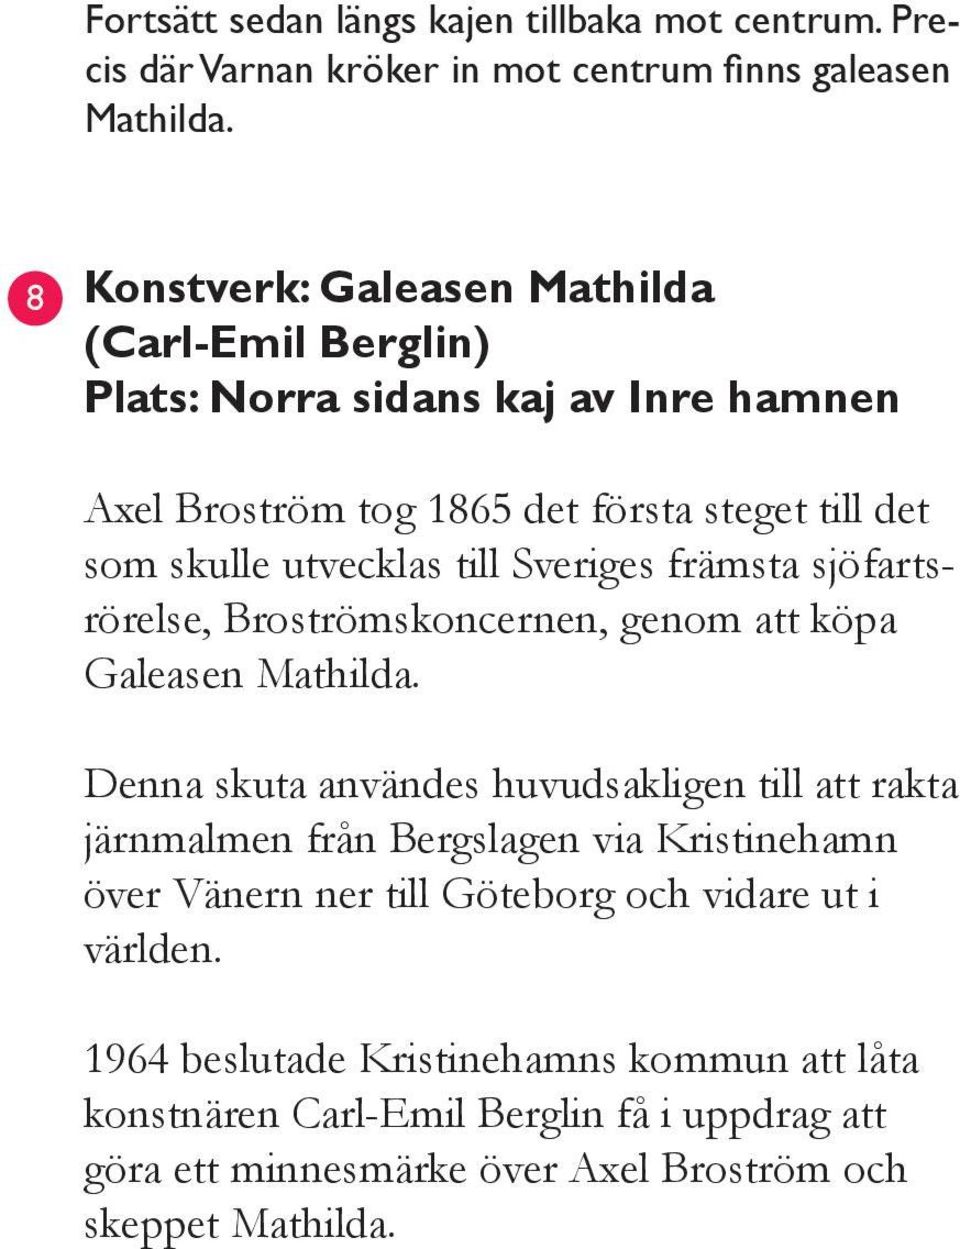 Sveriges främsta sjöfartsrörelse, Broströmskoncernen, genom att köpa Galeasen Mathilda.